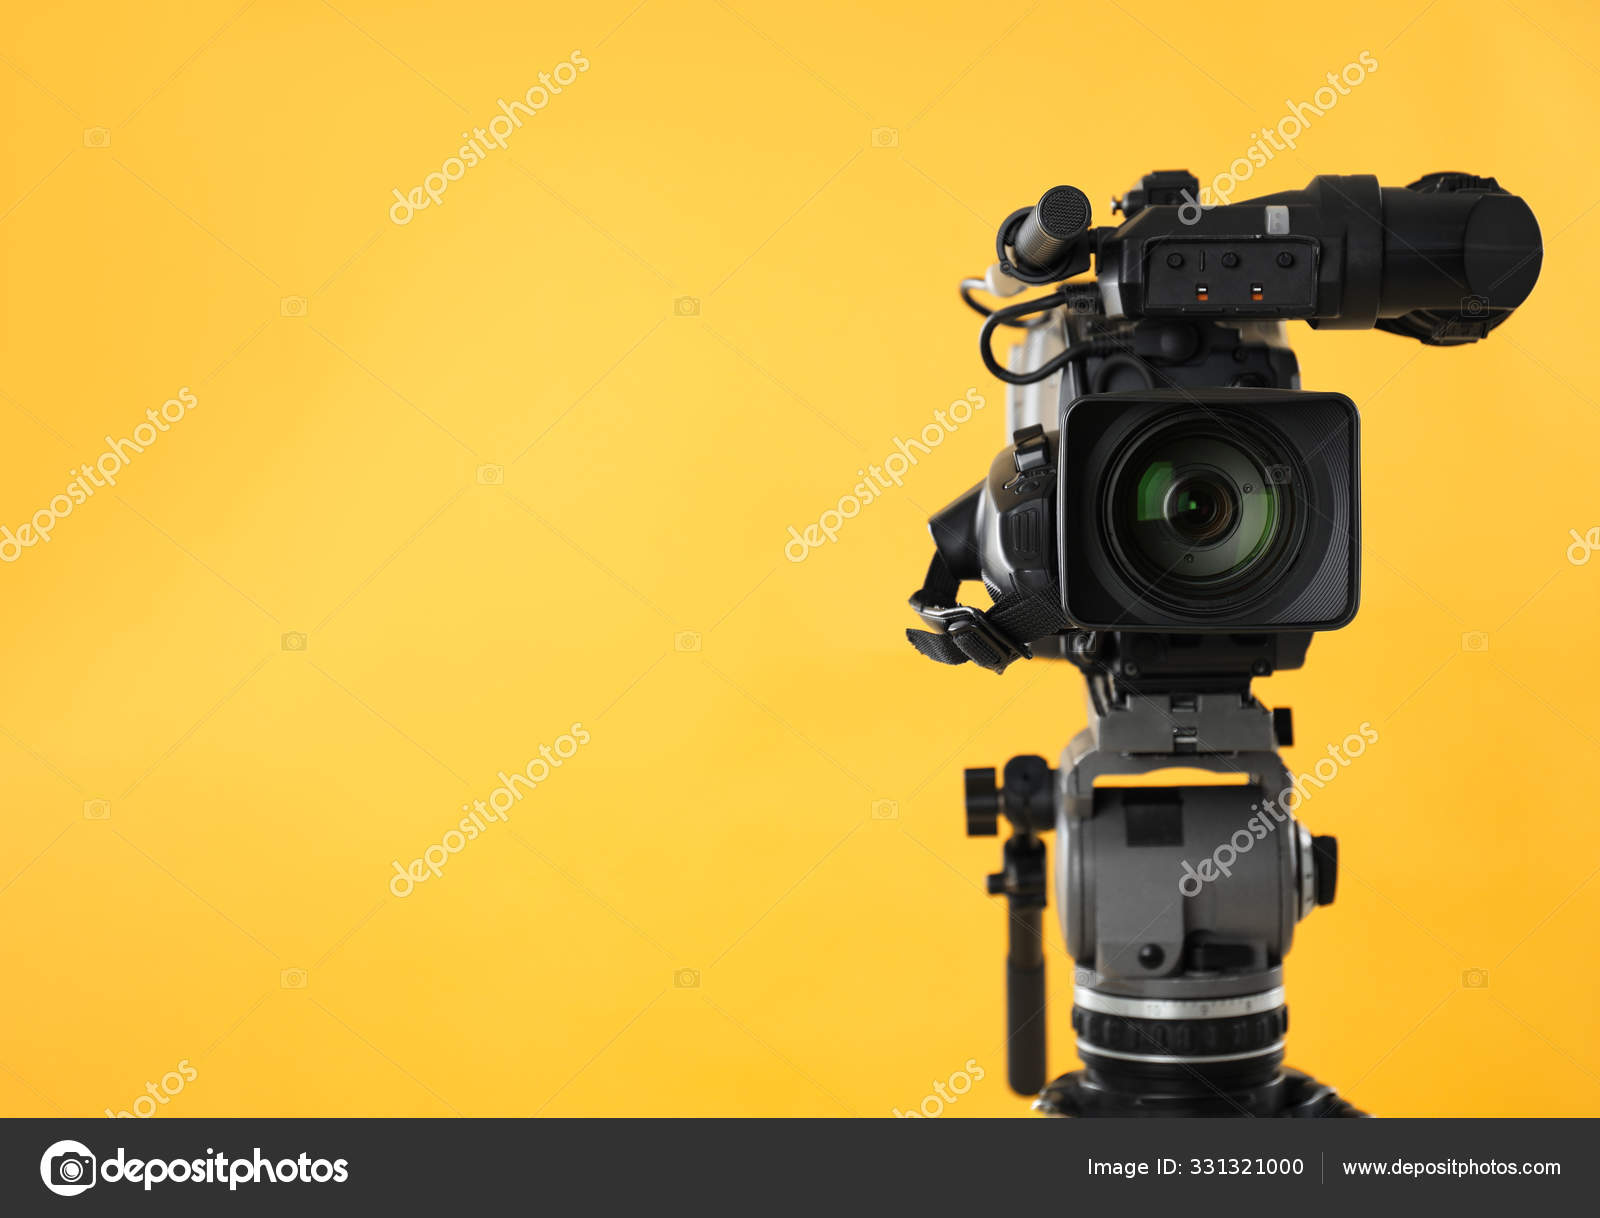 Máy quay phim chuyên nghiệp trên nền vàng mang đến cho bạn chất lượng hình ảnh hoàn hảo, với màu sắc đẹp như trong mơ. Hãy đón xem những khoảnh khắc đáng nhớ được ghi lại bằng chiếc máy quay phim chuyên nghiệp này.